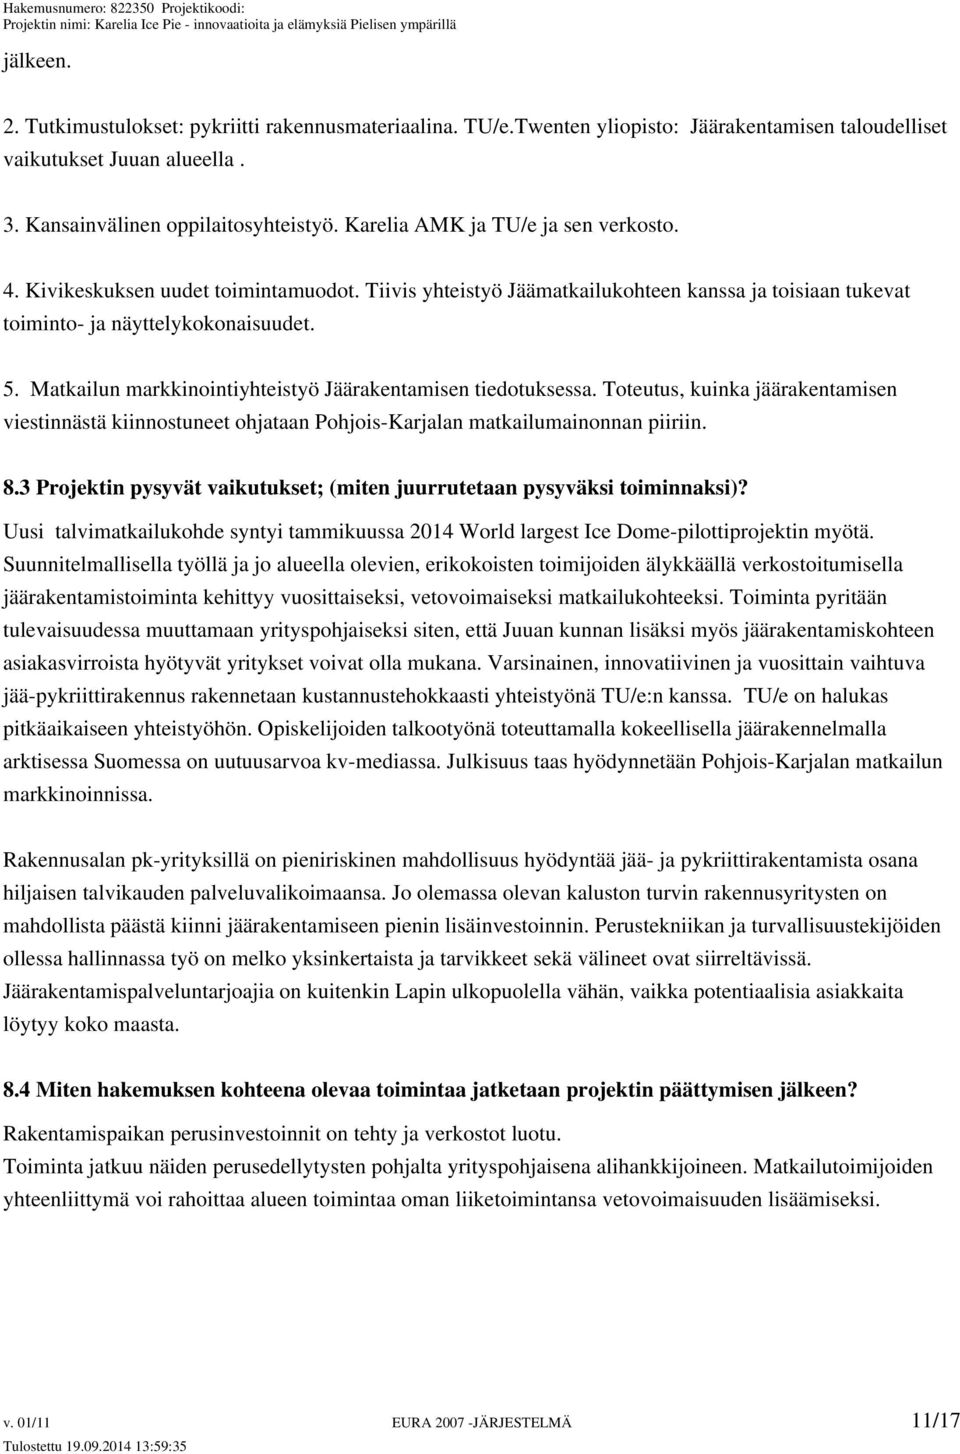 Matkailun markkinointiyhteistyö Jäärakentamisen tiedotuksessa. Toteutus, kuinka jäärakentamisen viestinnästä kiinnostuneet ohjataan Pohjois-Karjalan matkailumainonnan piiriin. 8.